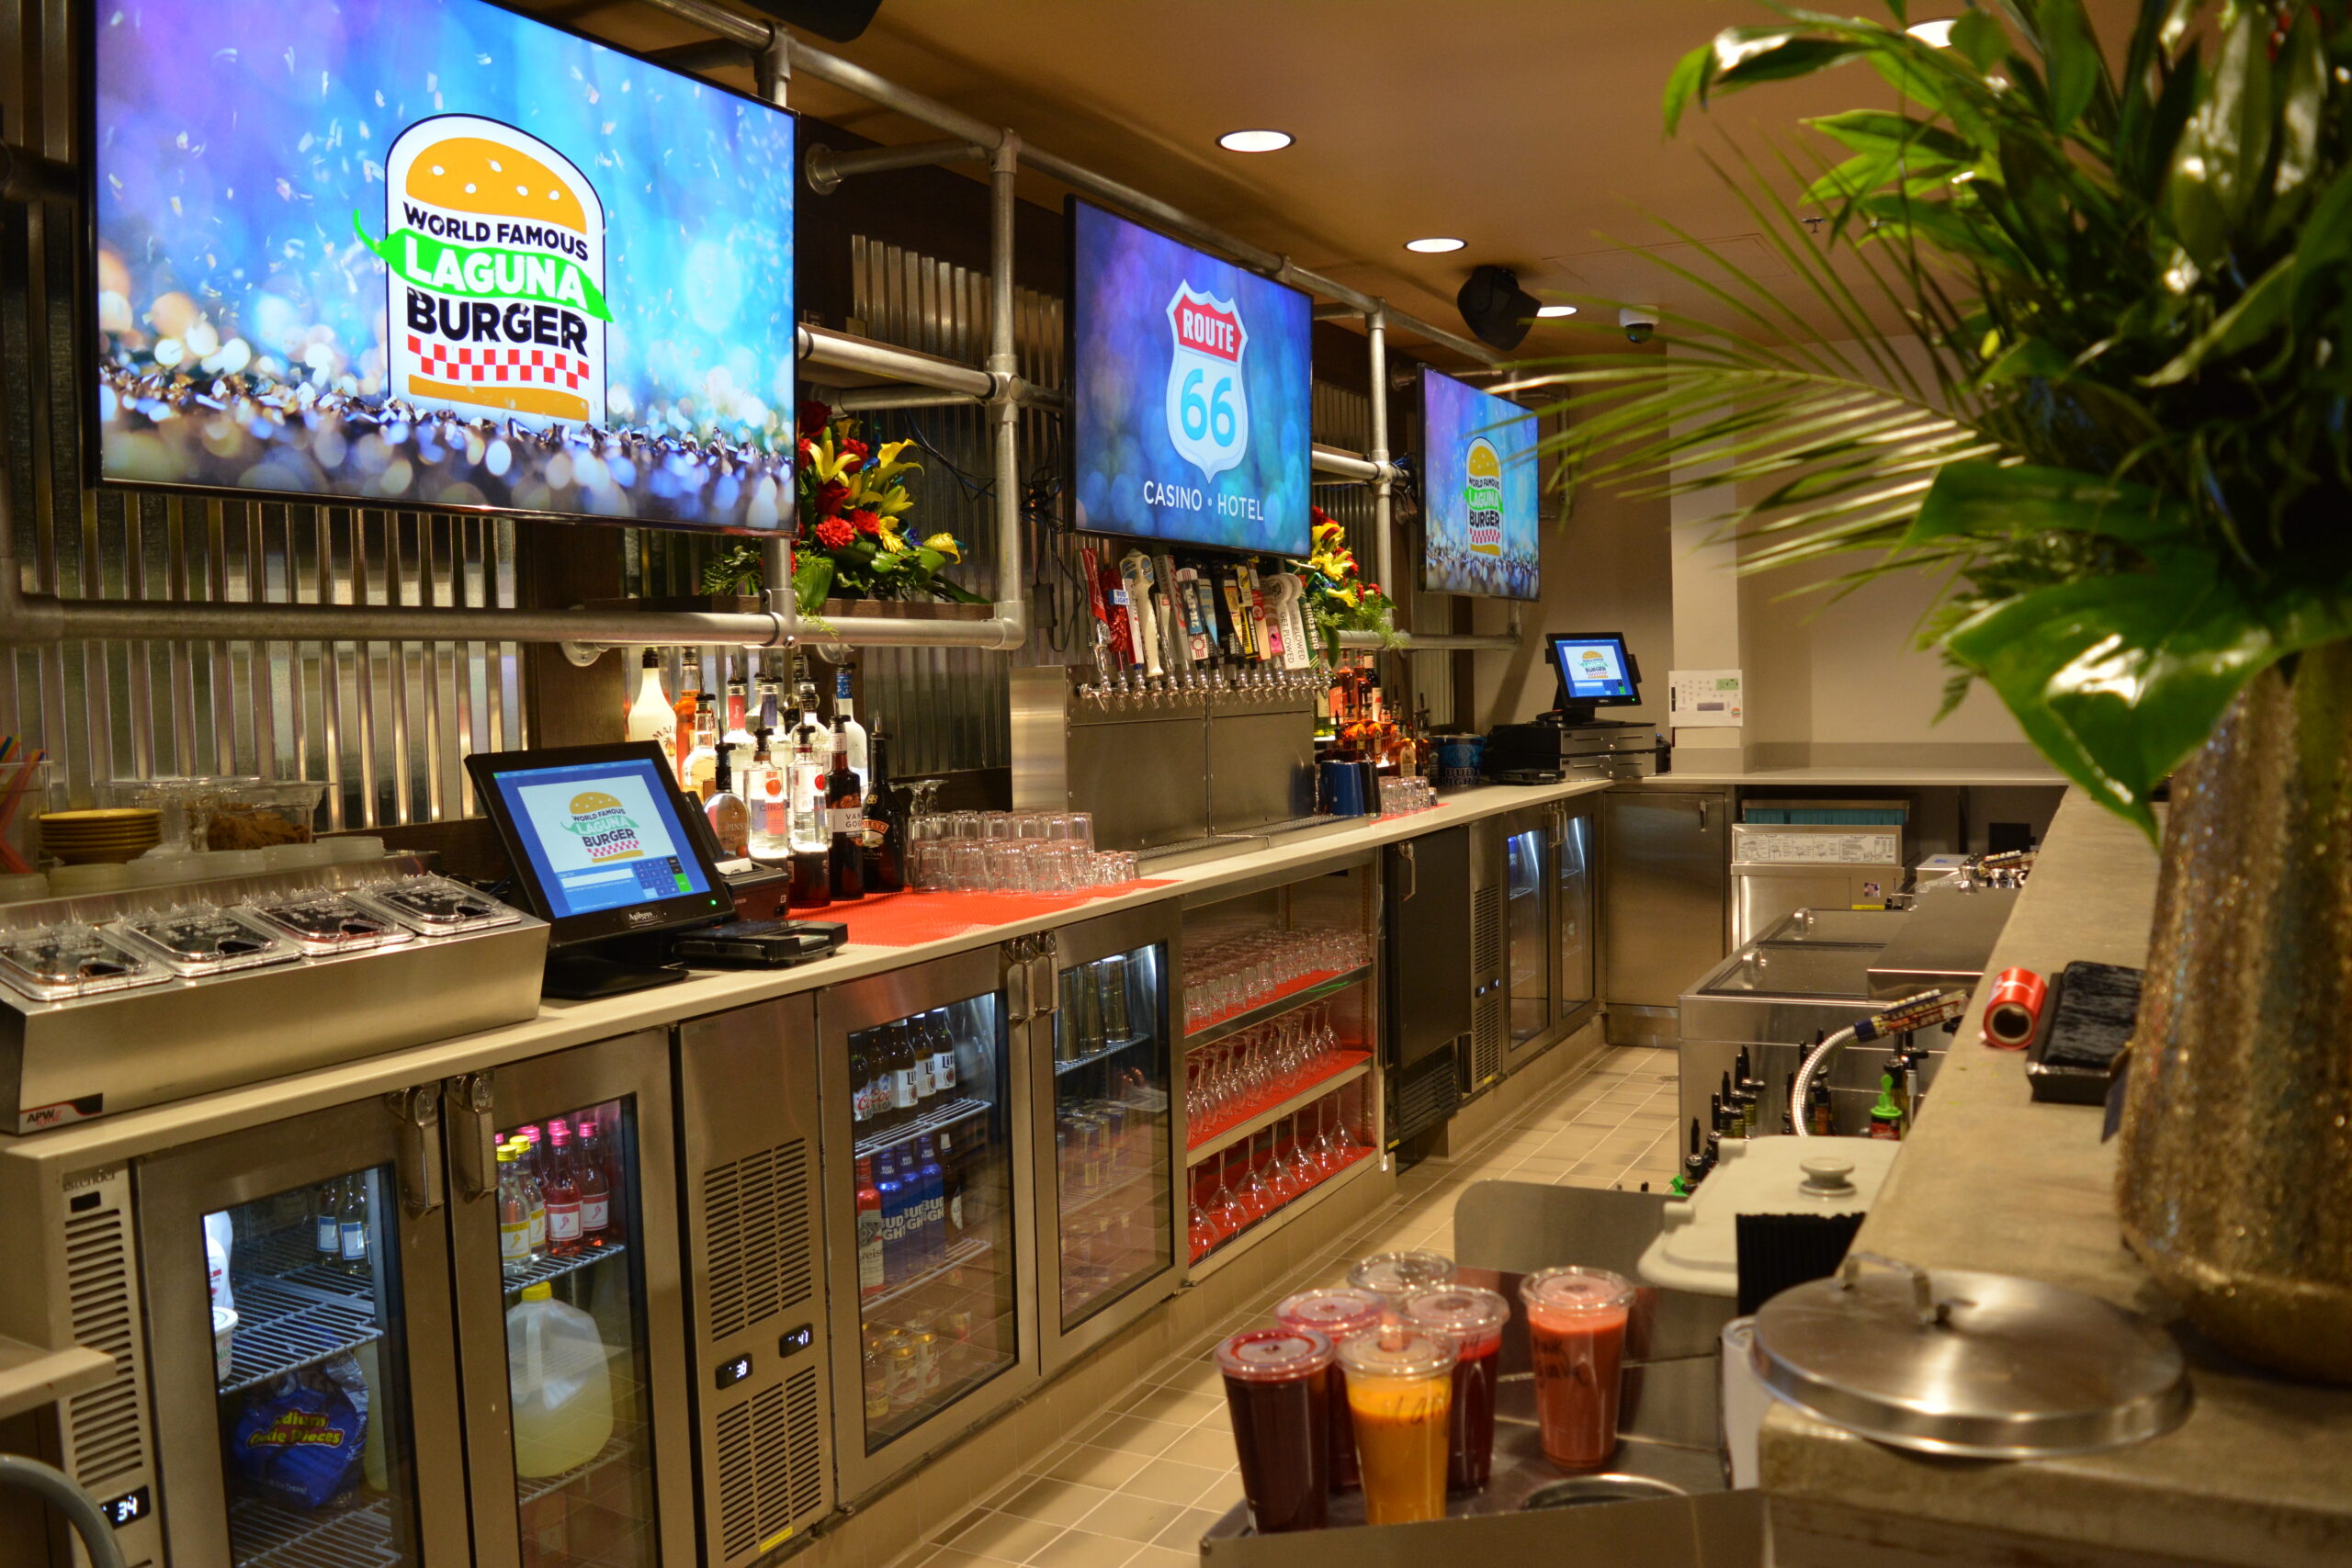 New Laguna Burger Restaurant located inside Route 66 Casino